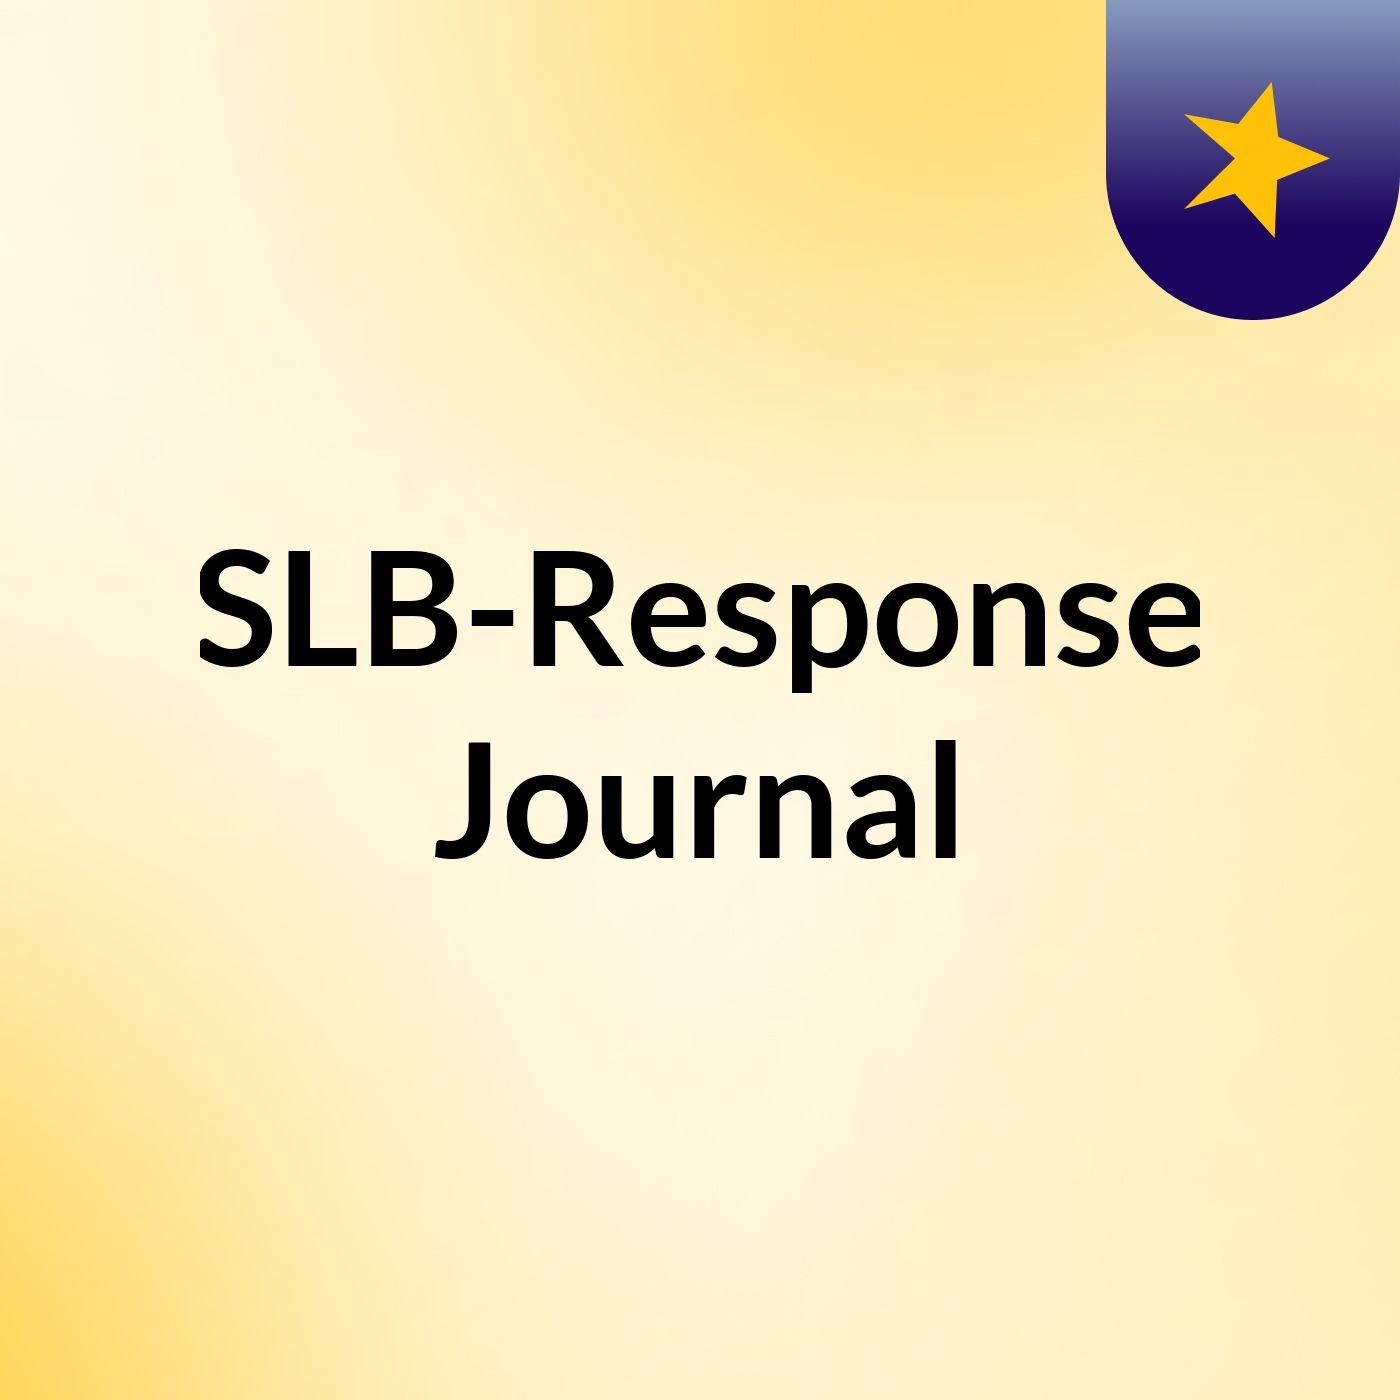 Episode 8 - SLB-Response Journal